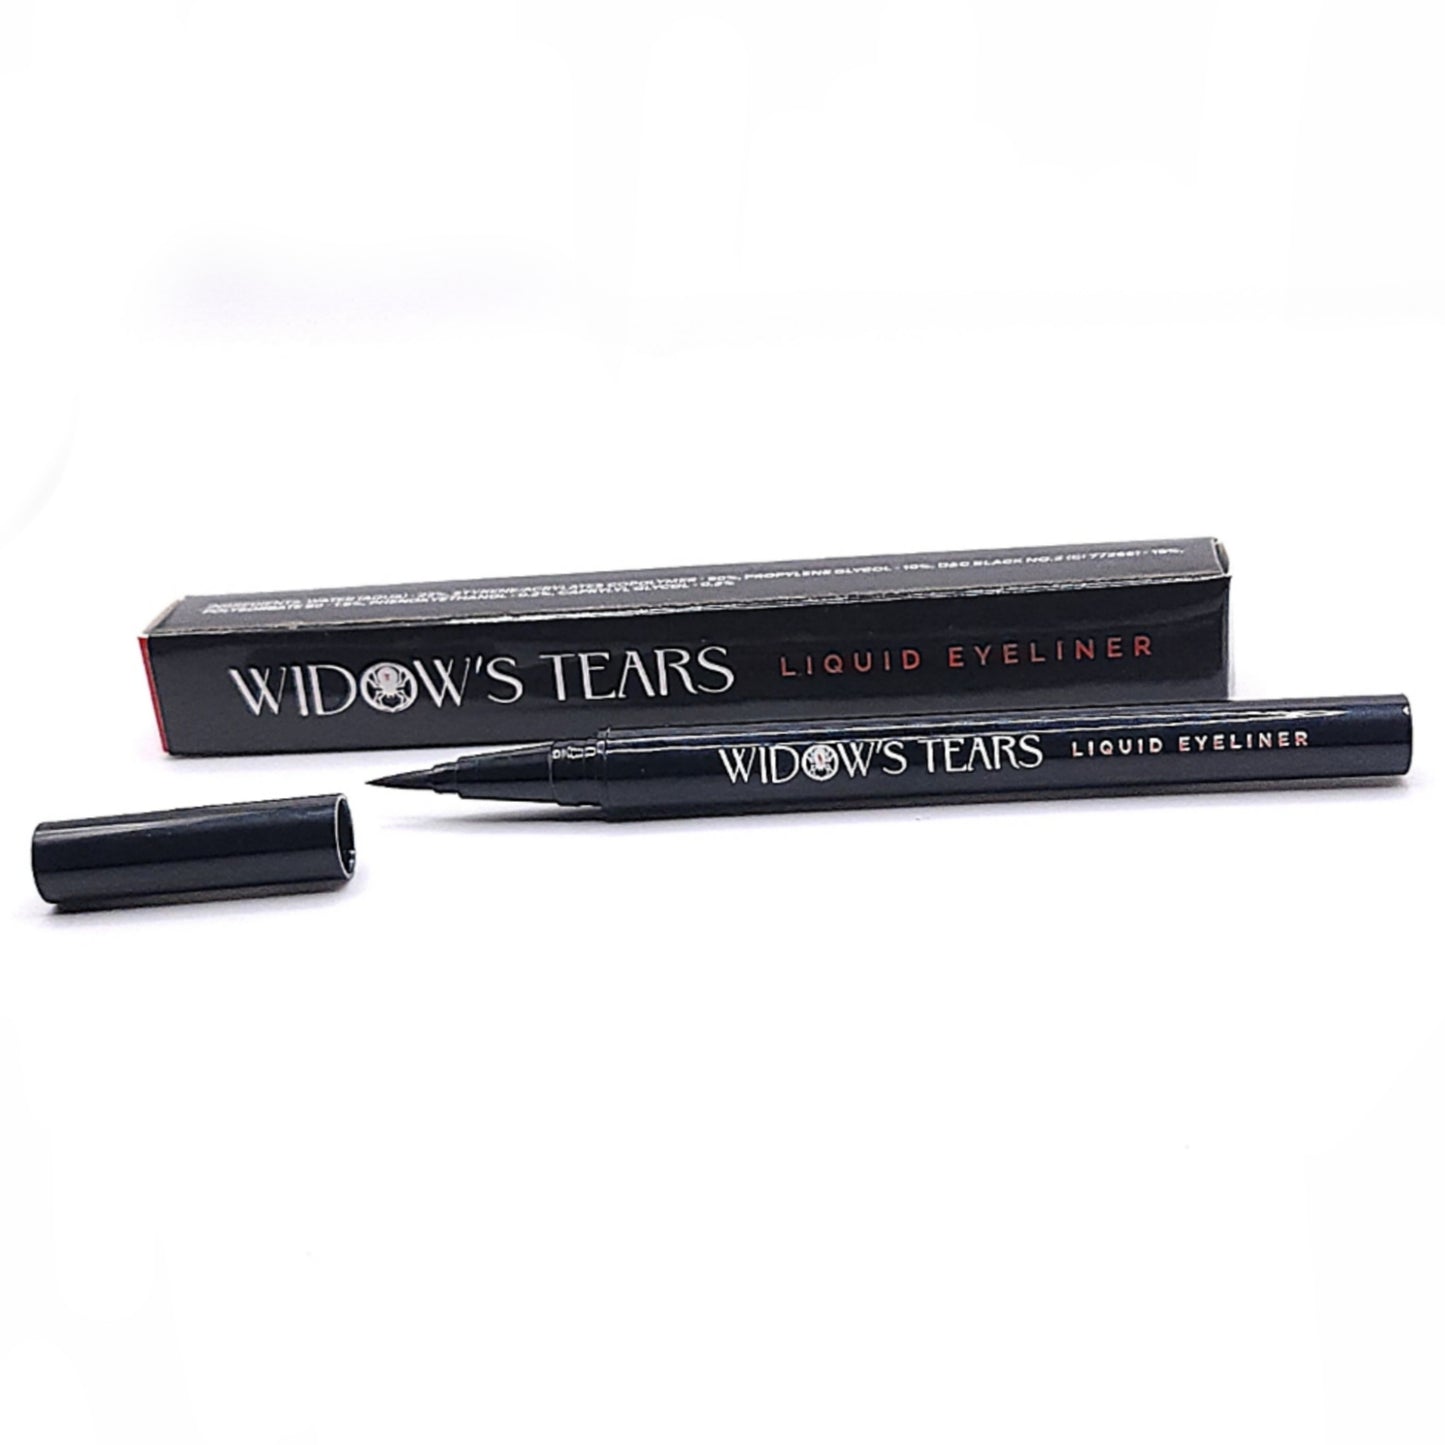 Widow’s Tears Eyeliner & Lash Glue